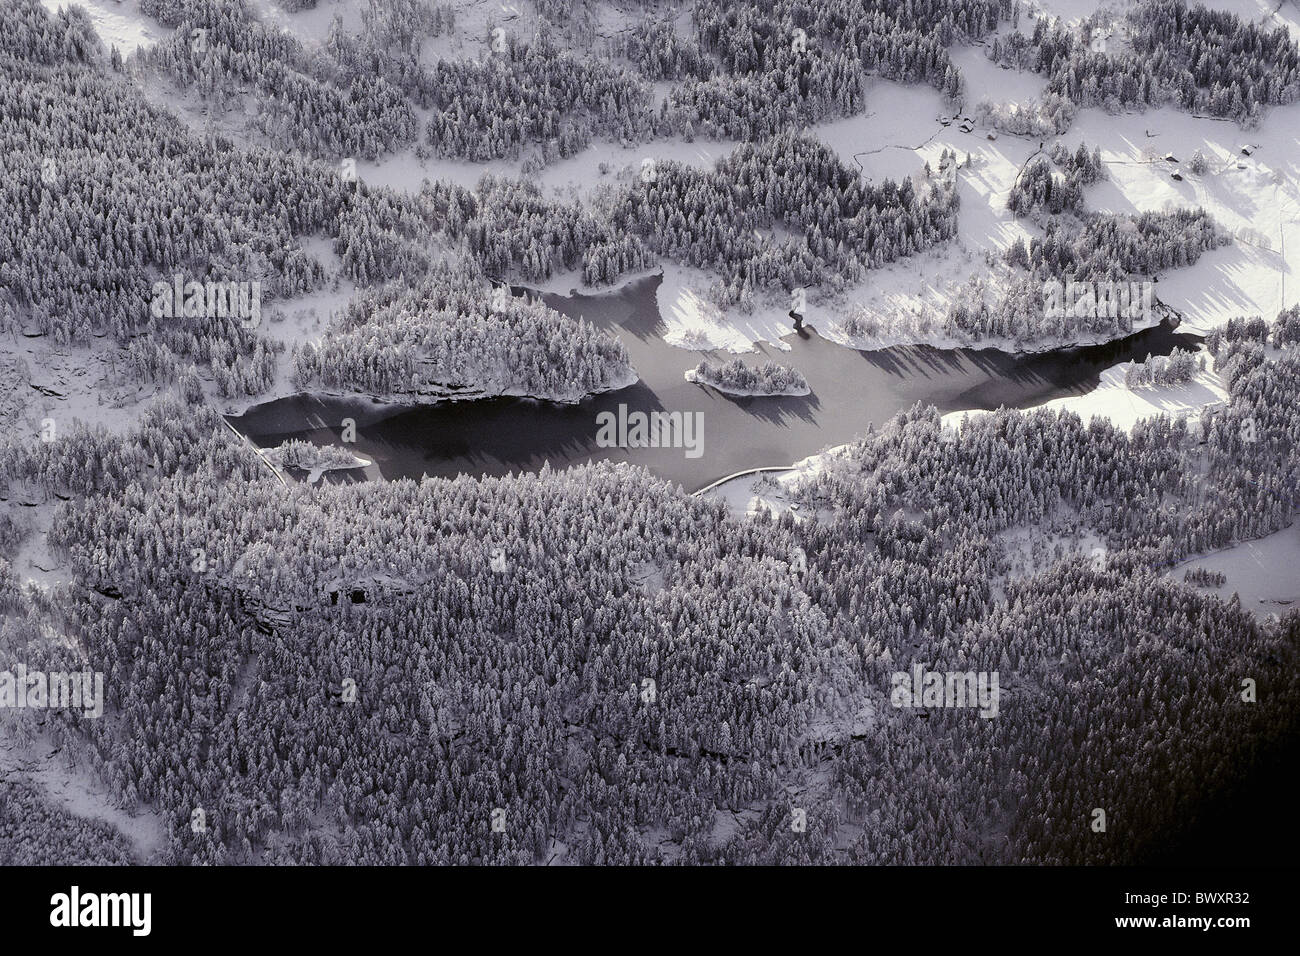 Le lac de la forêt d'hiver mer paysage photo aérienne Suisse Europe Chapfensee forêt bois Banque D'Images